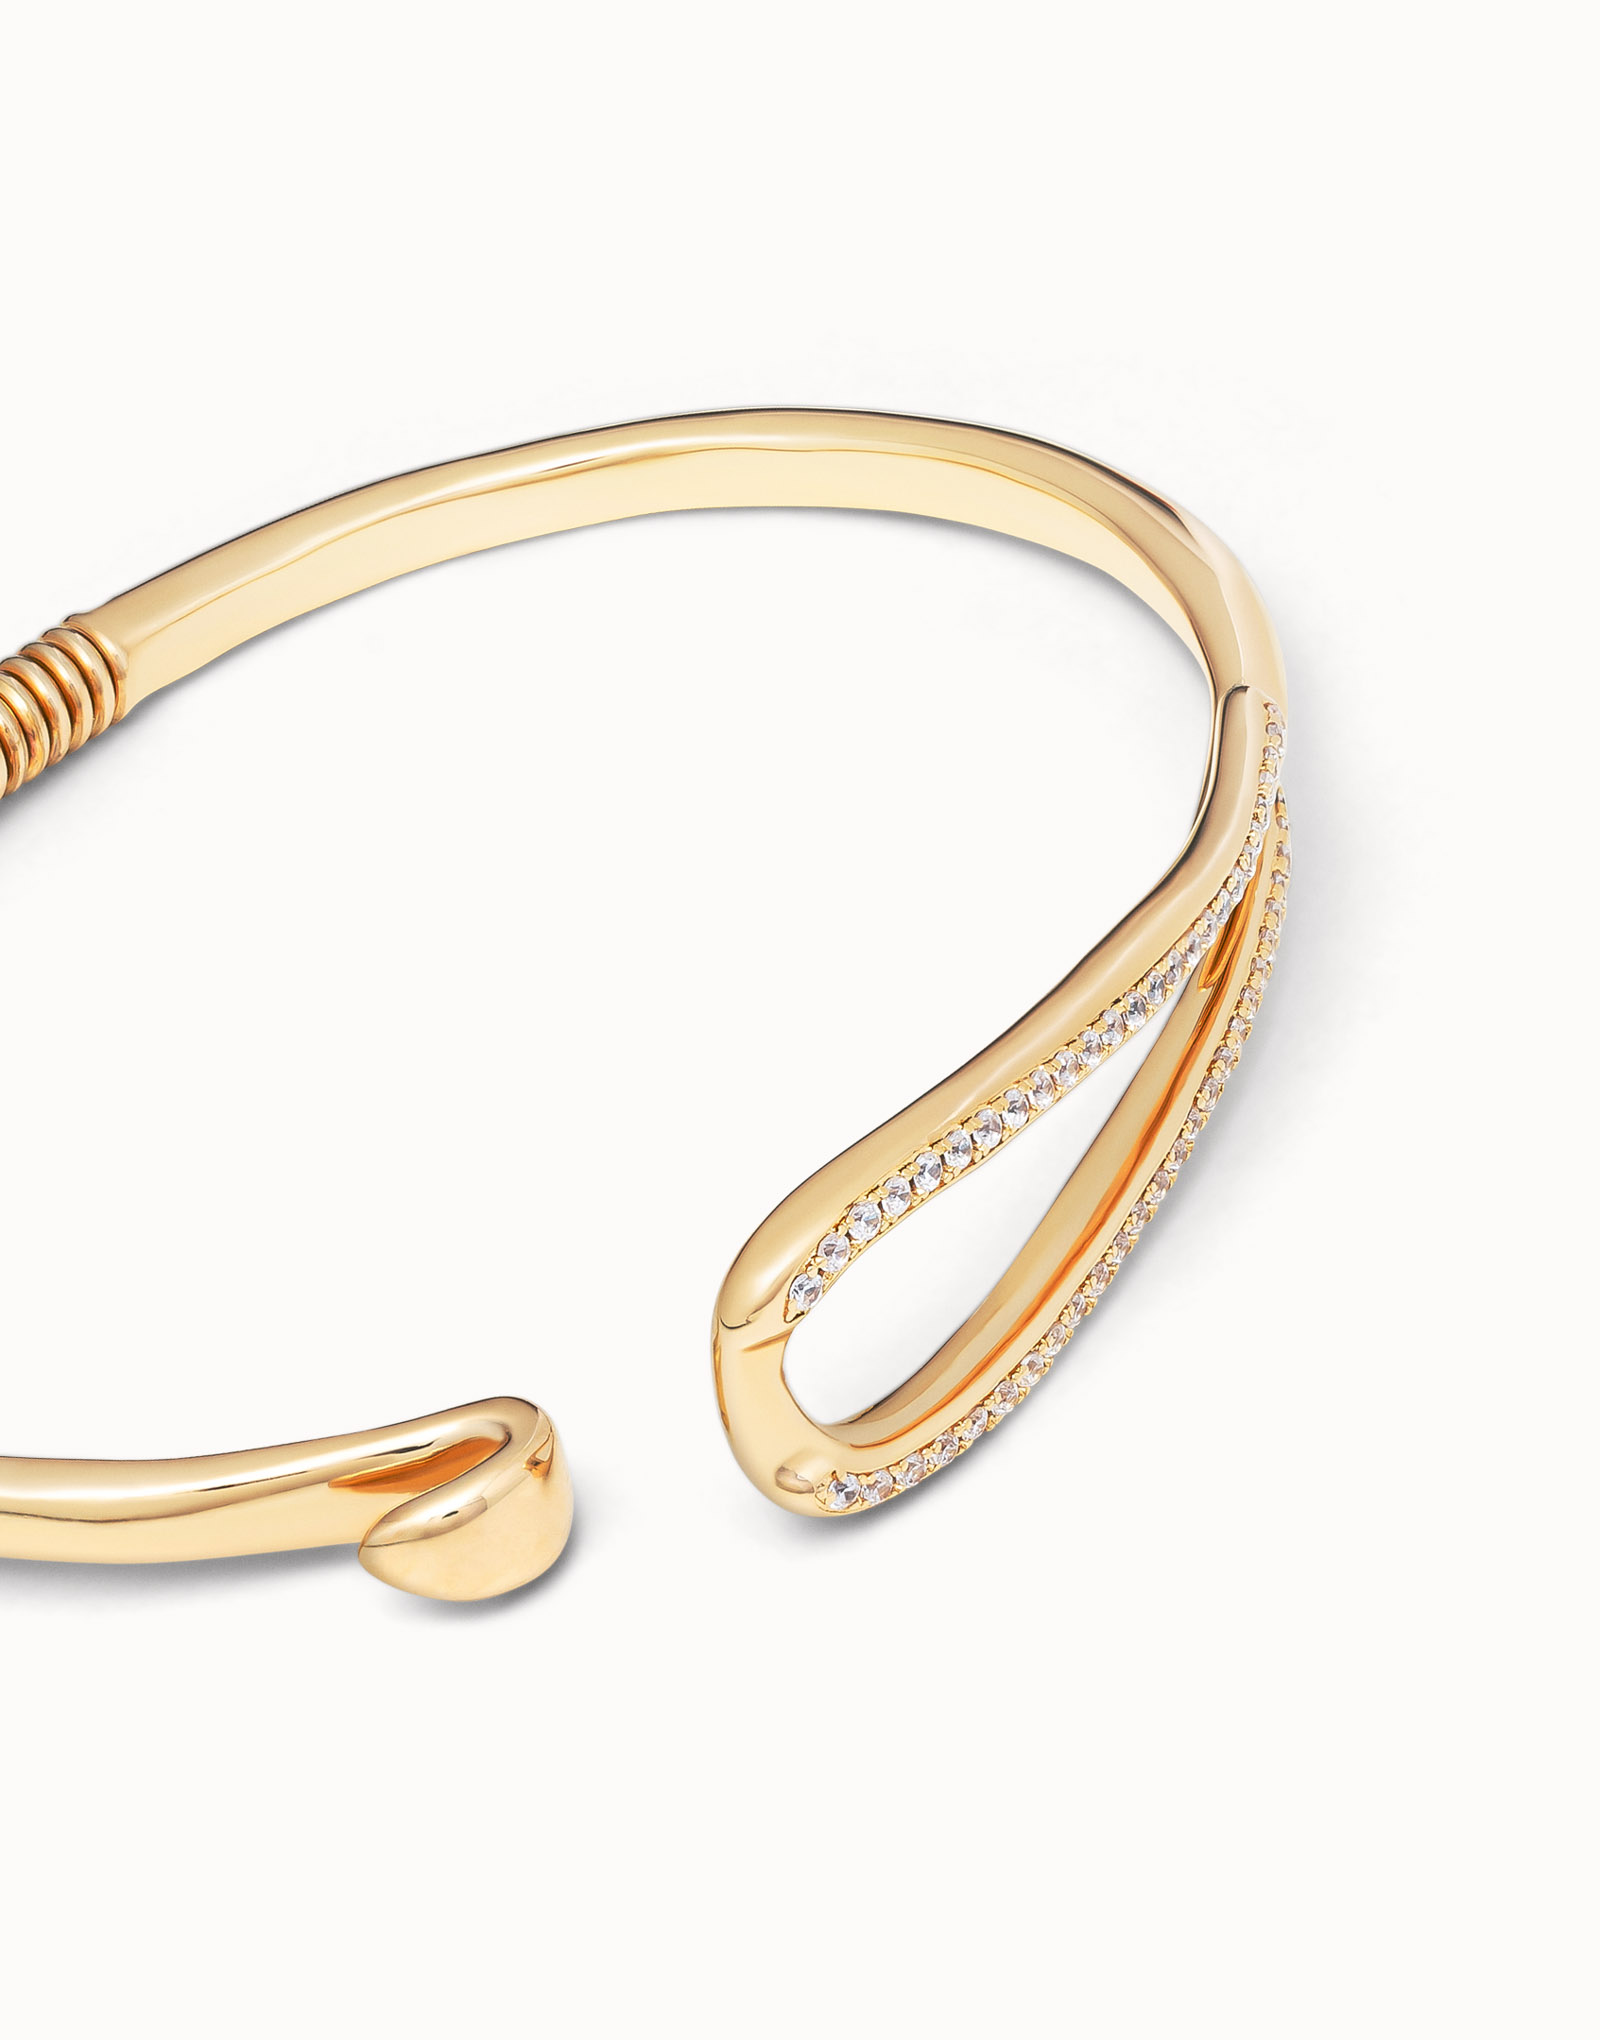 18K gold-plated link shaped bracelet with topaz, Golden, large image number null